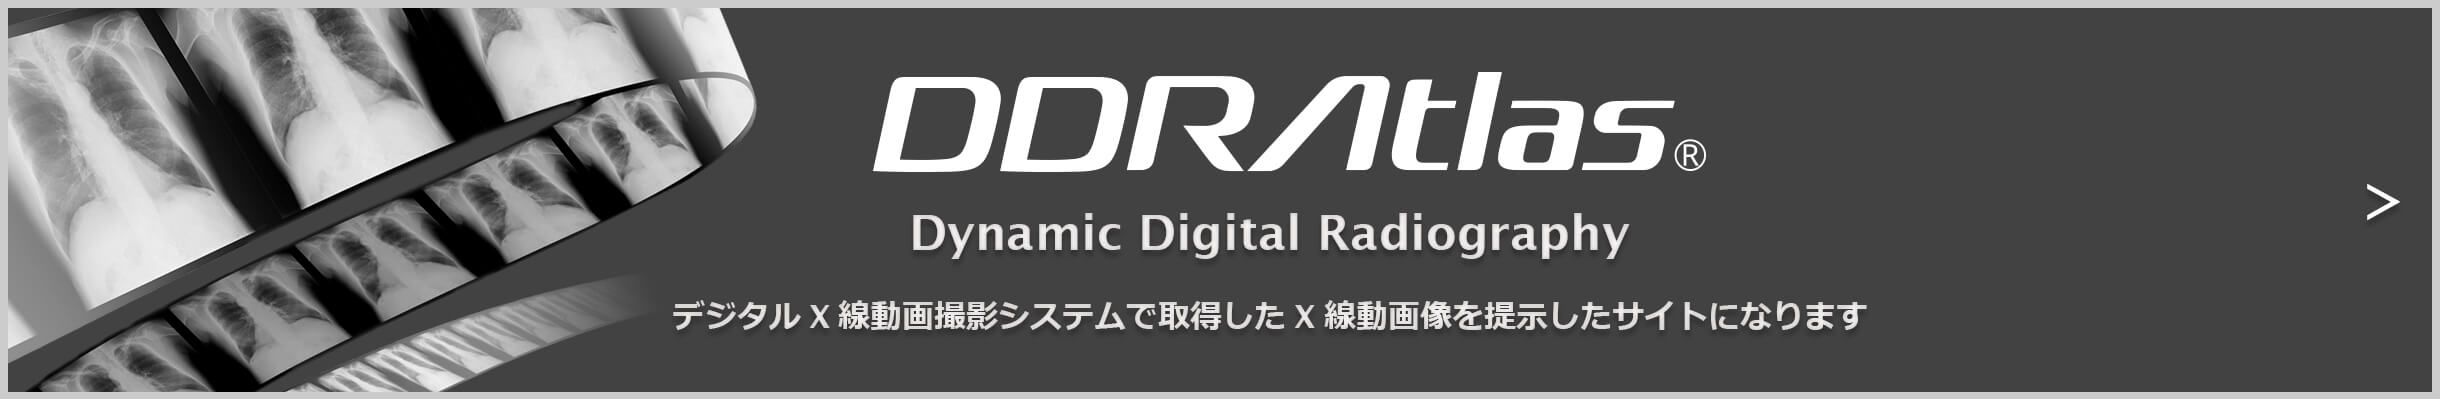 DDRAtlasはデジタルX線動画撮影システムで取得したX線動画像を提示したサイトになります